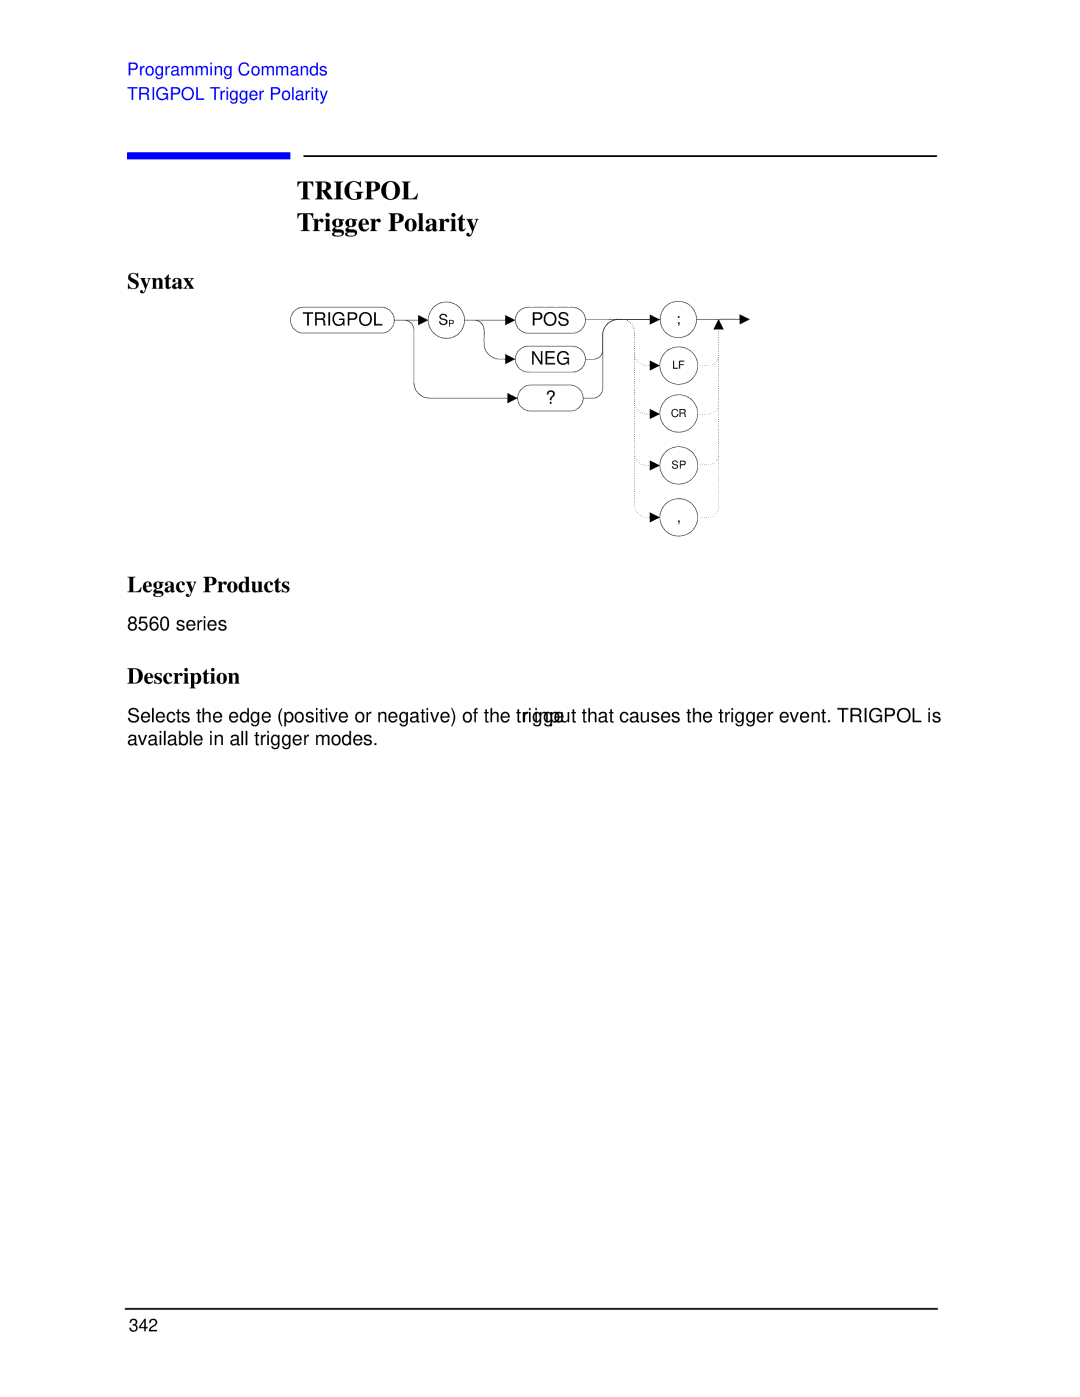 Agilent Technologies N9030a manual Trigpol, Trigger Polarity 